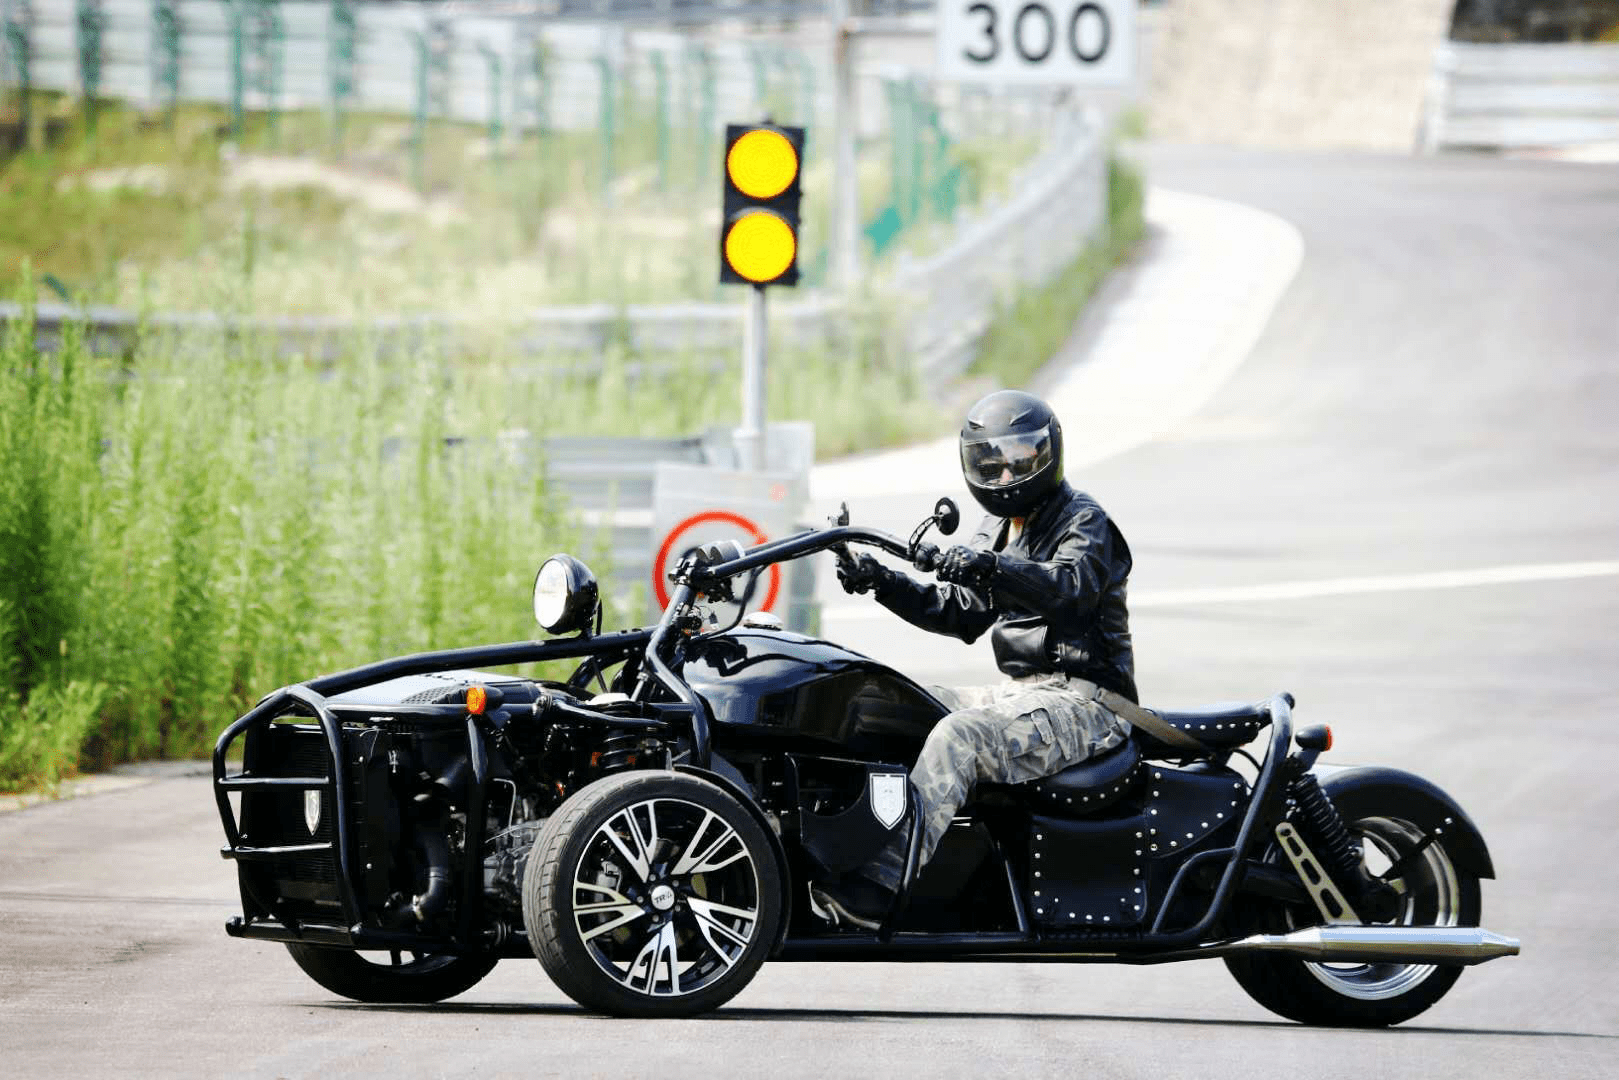 兰盾三轮摩托车图片